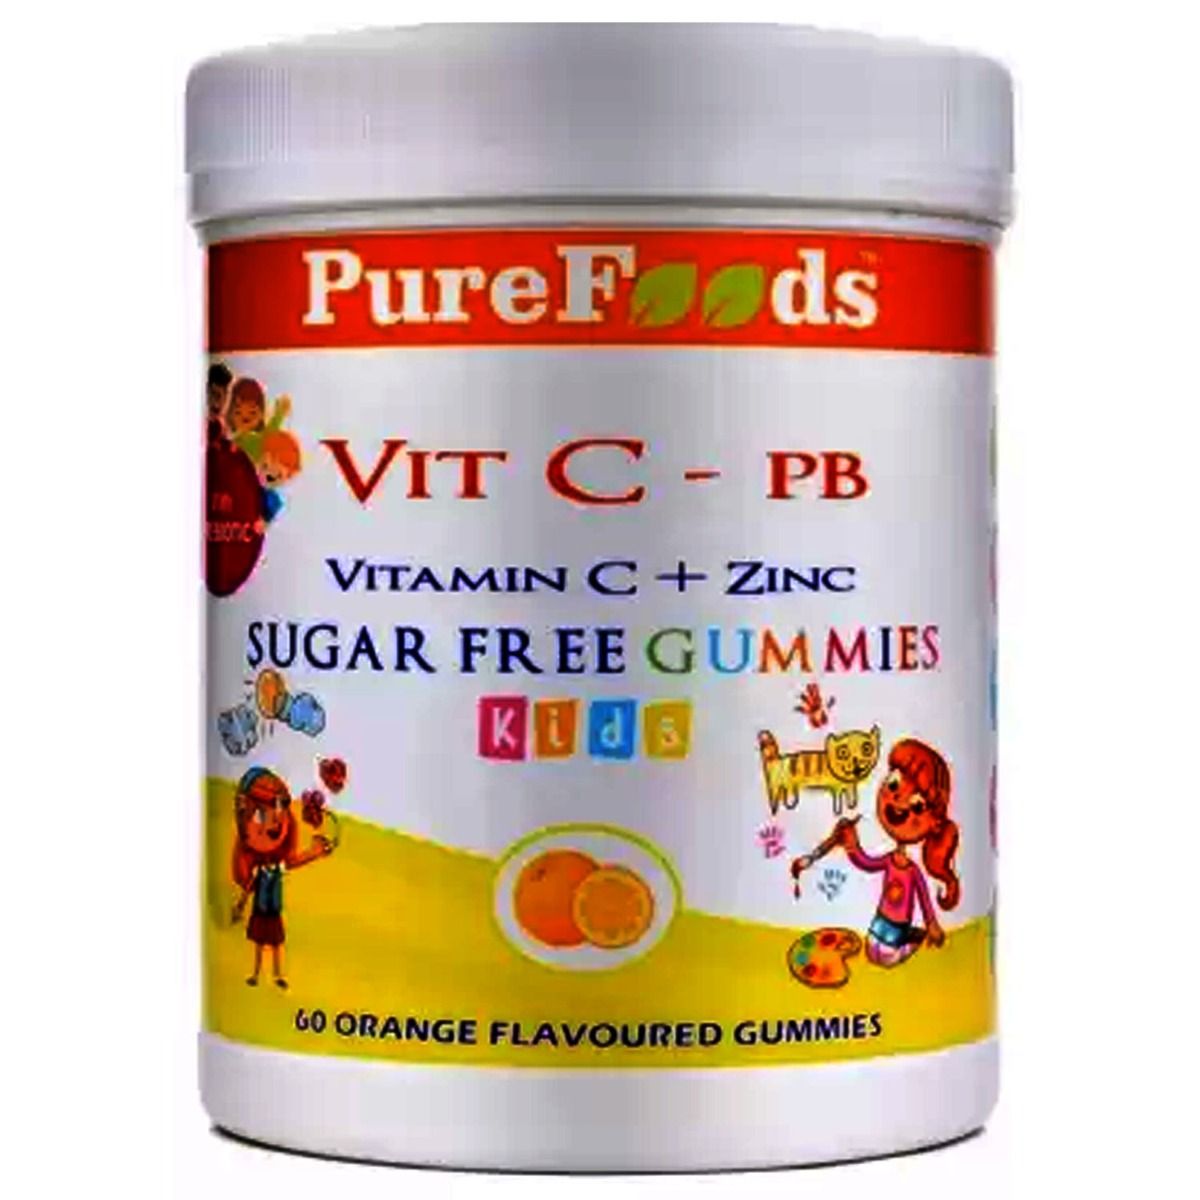 Buy Pure Foods Kids Vitamin C + Zinc Orange Flavour Gummies, 60 Count Online